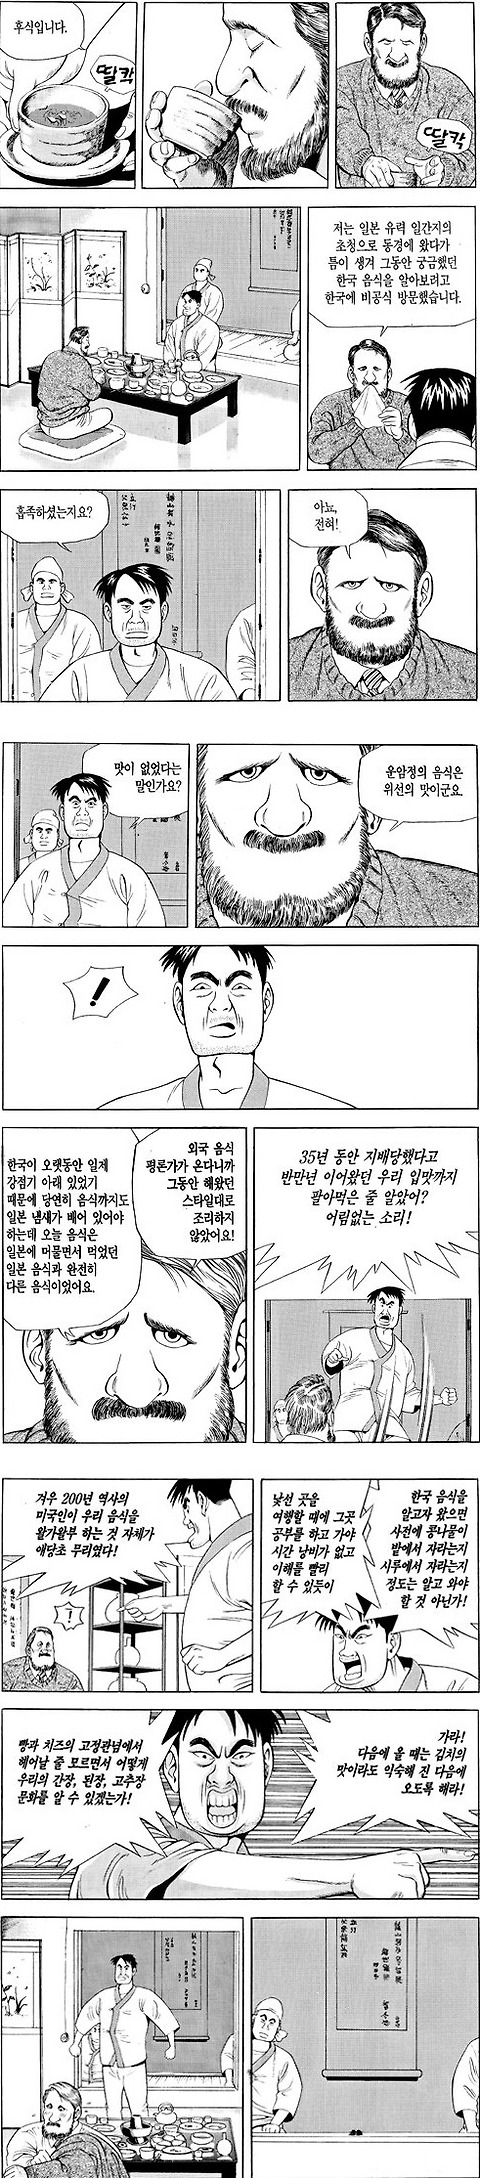 한국인 전용 바로 쌍욕박게 만들어주는 도발